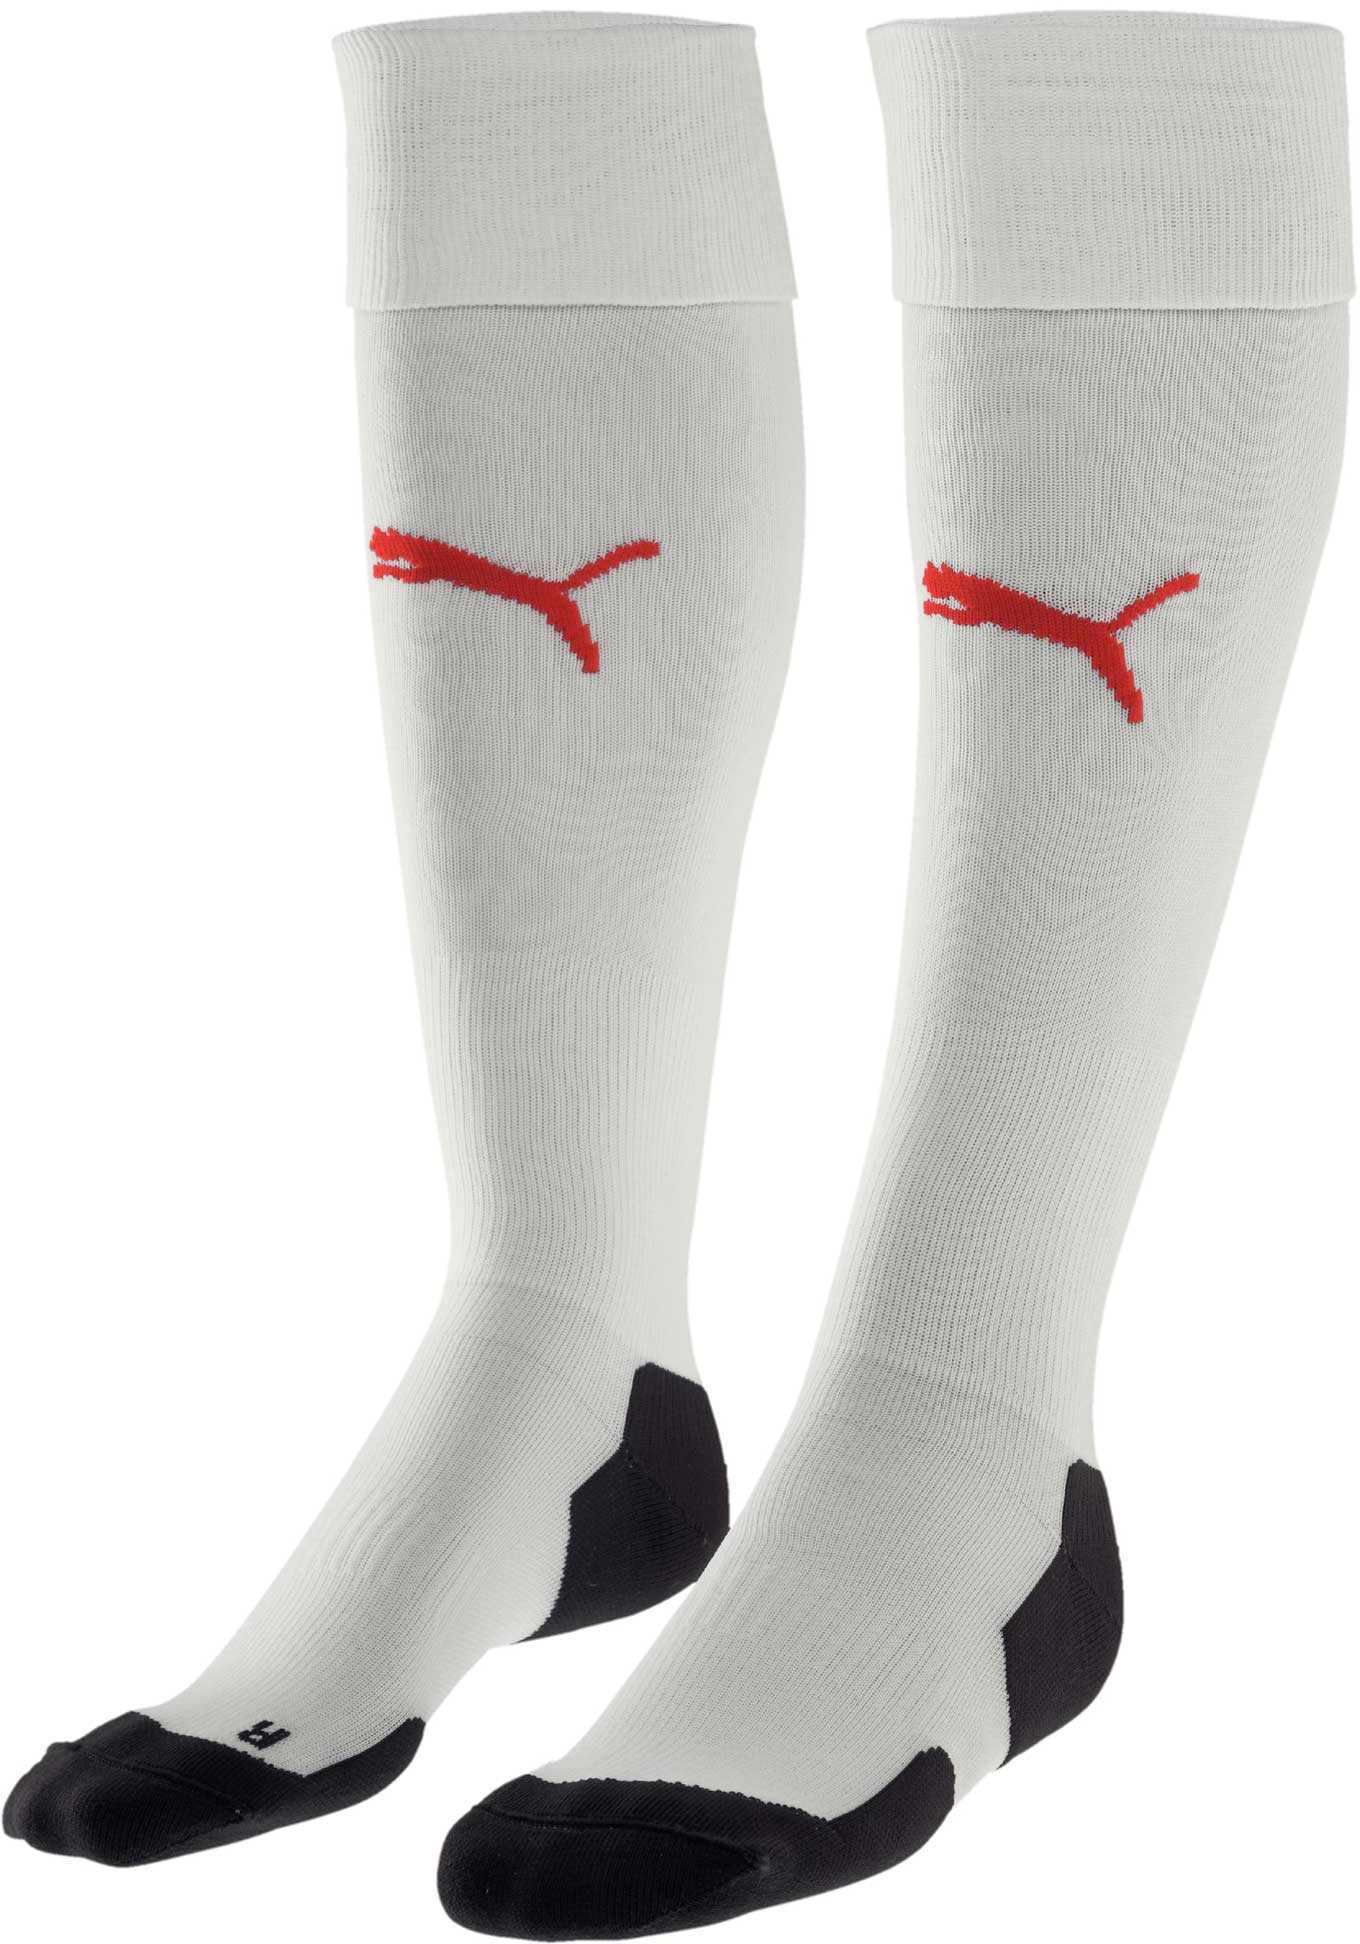 Men's football socks